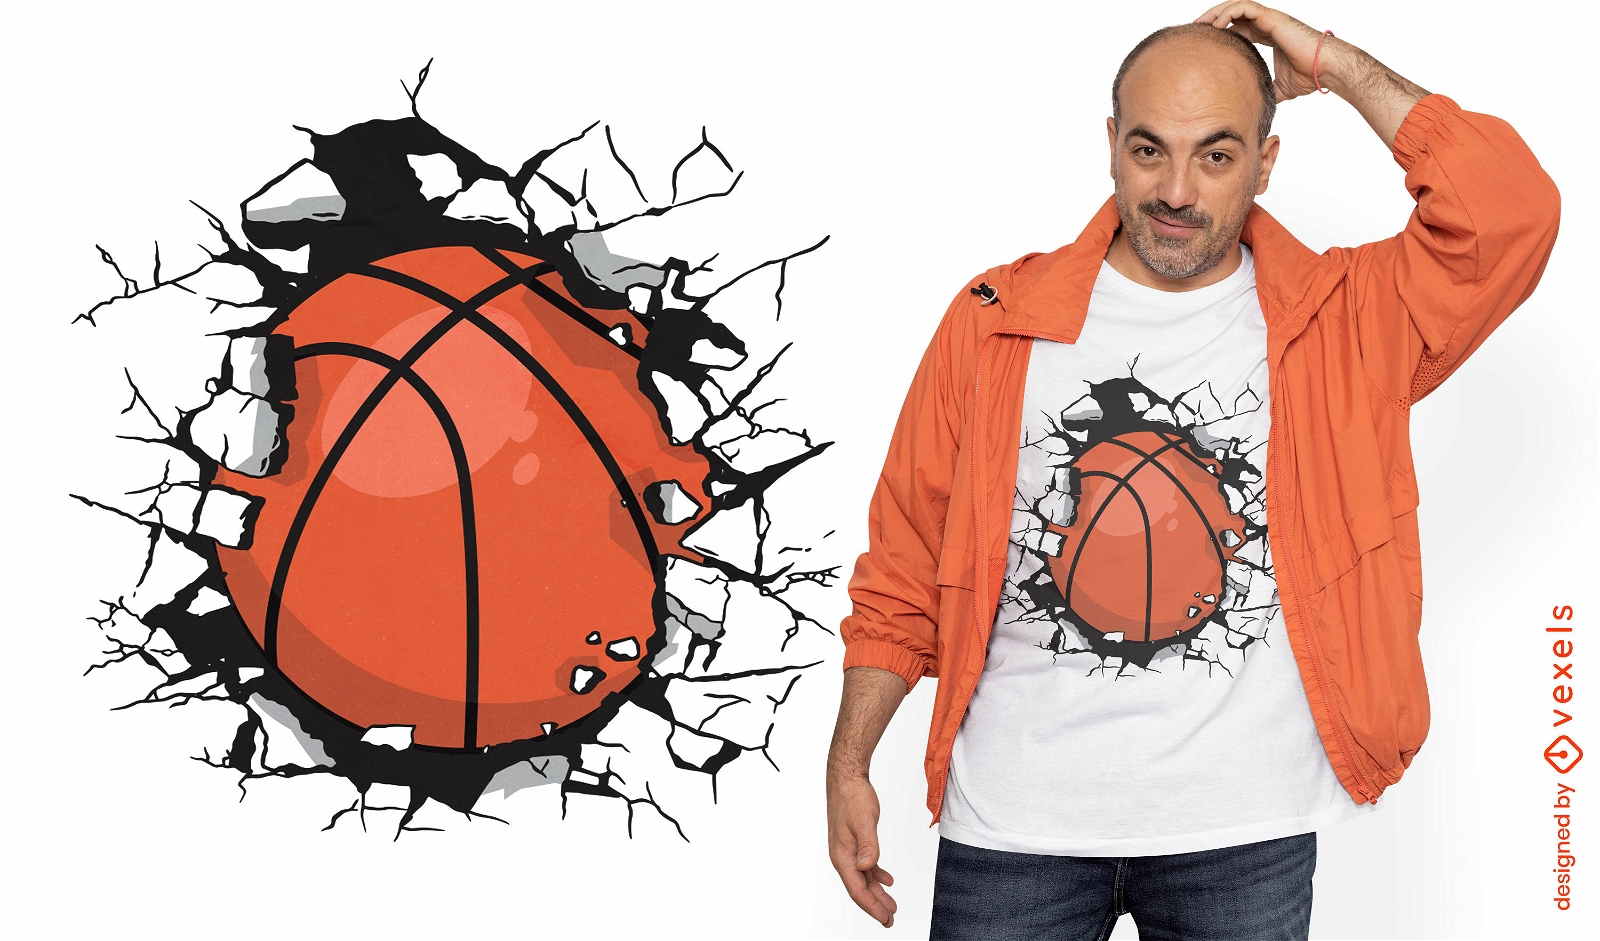 Dise?o de camiseta de deporte de pelota de baloncesto.